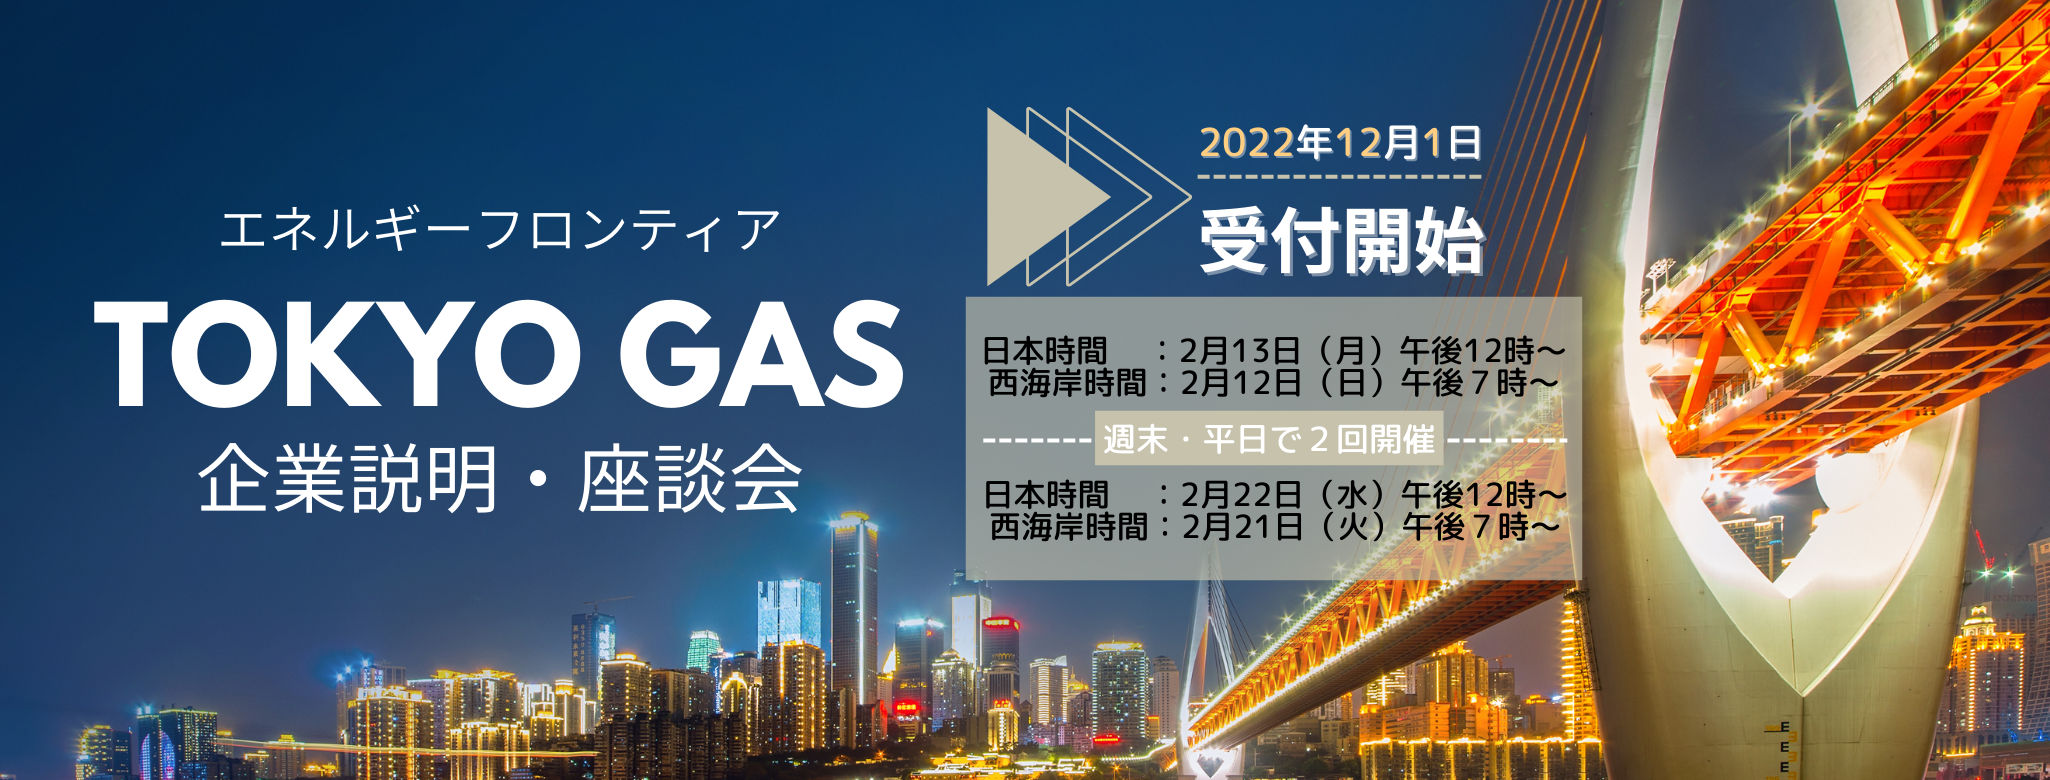 東京ガス2月セミナー